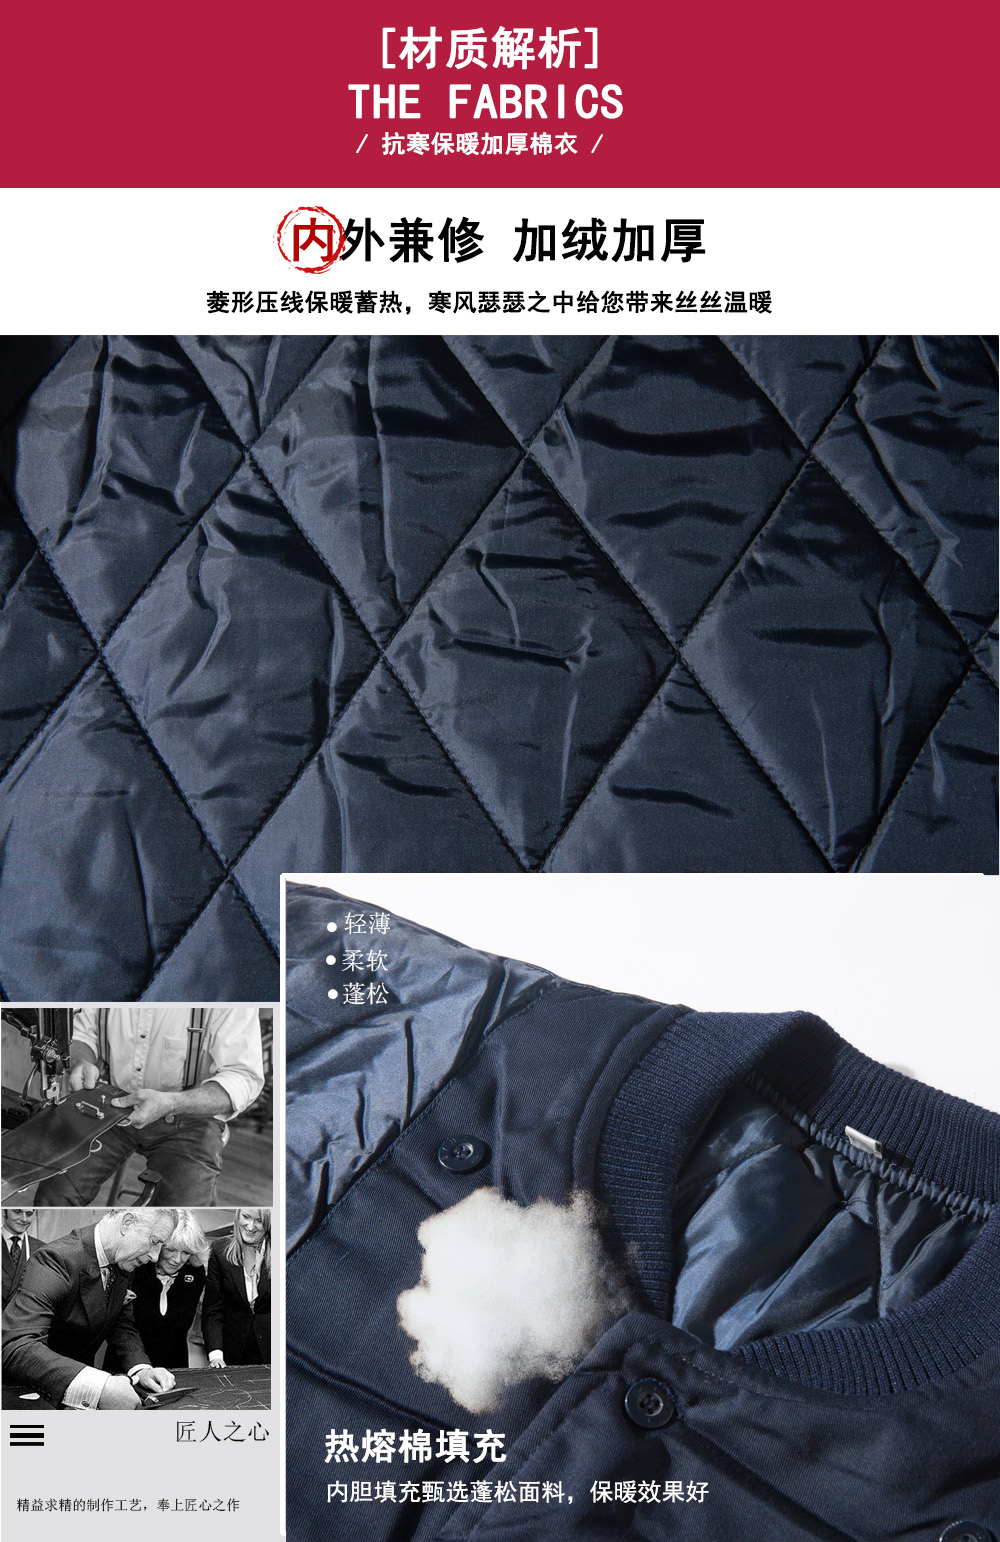 冬季棉服sym006材质解析